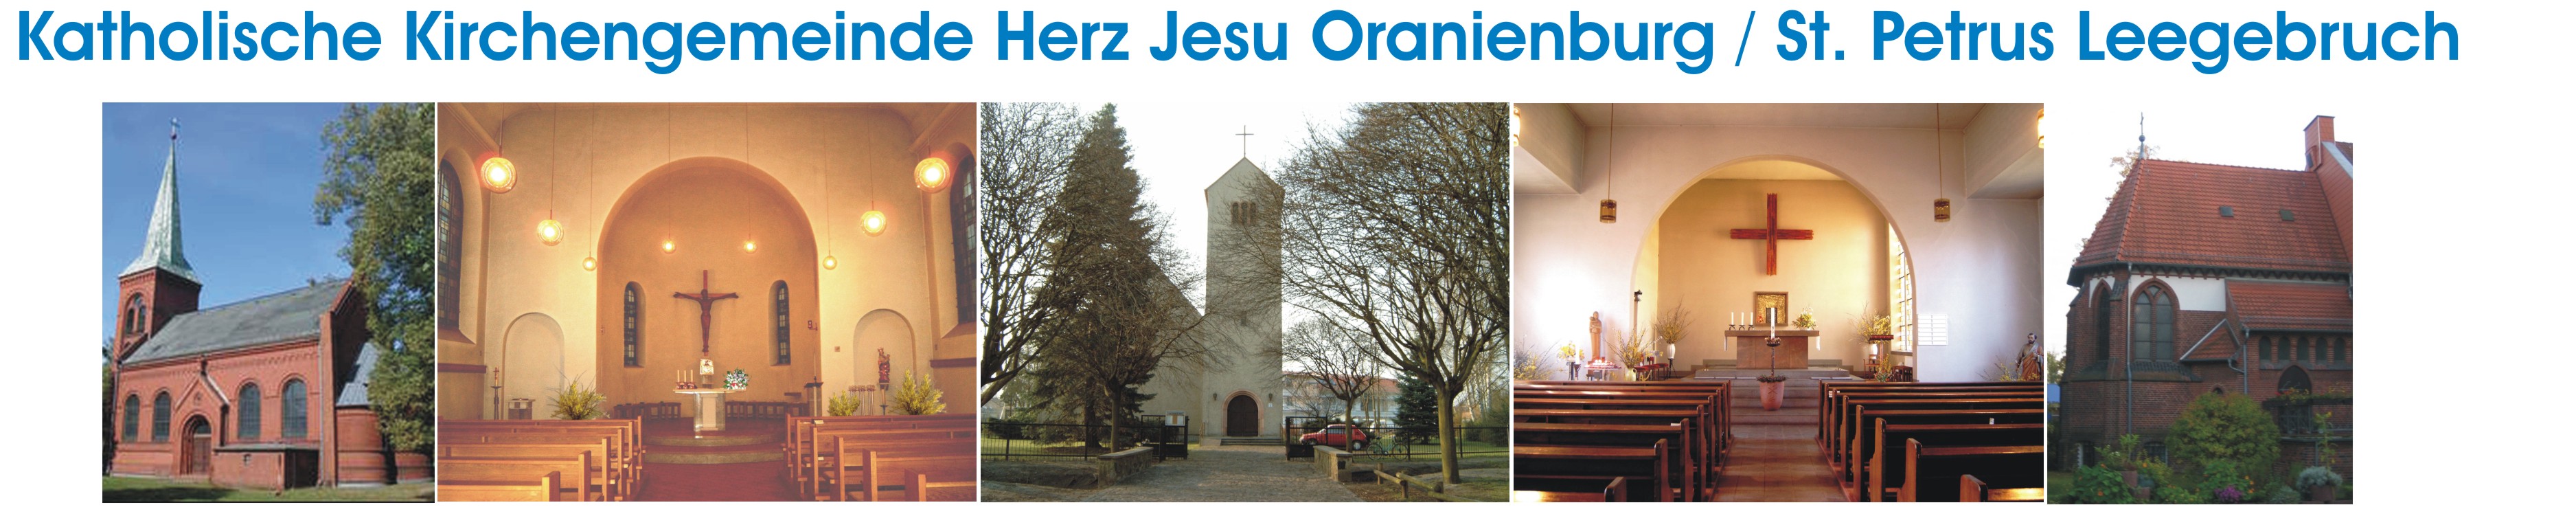 Katholische Kirchengemeinde Herz Jesu Oranienburg